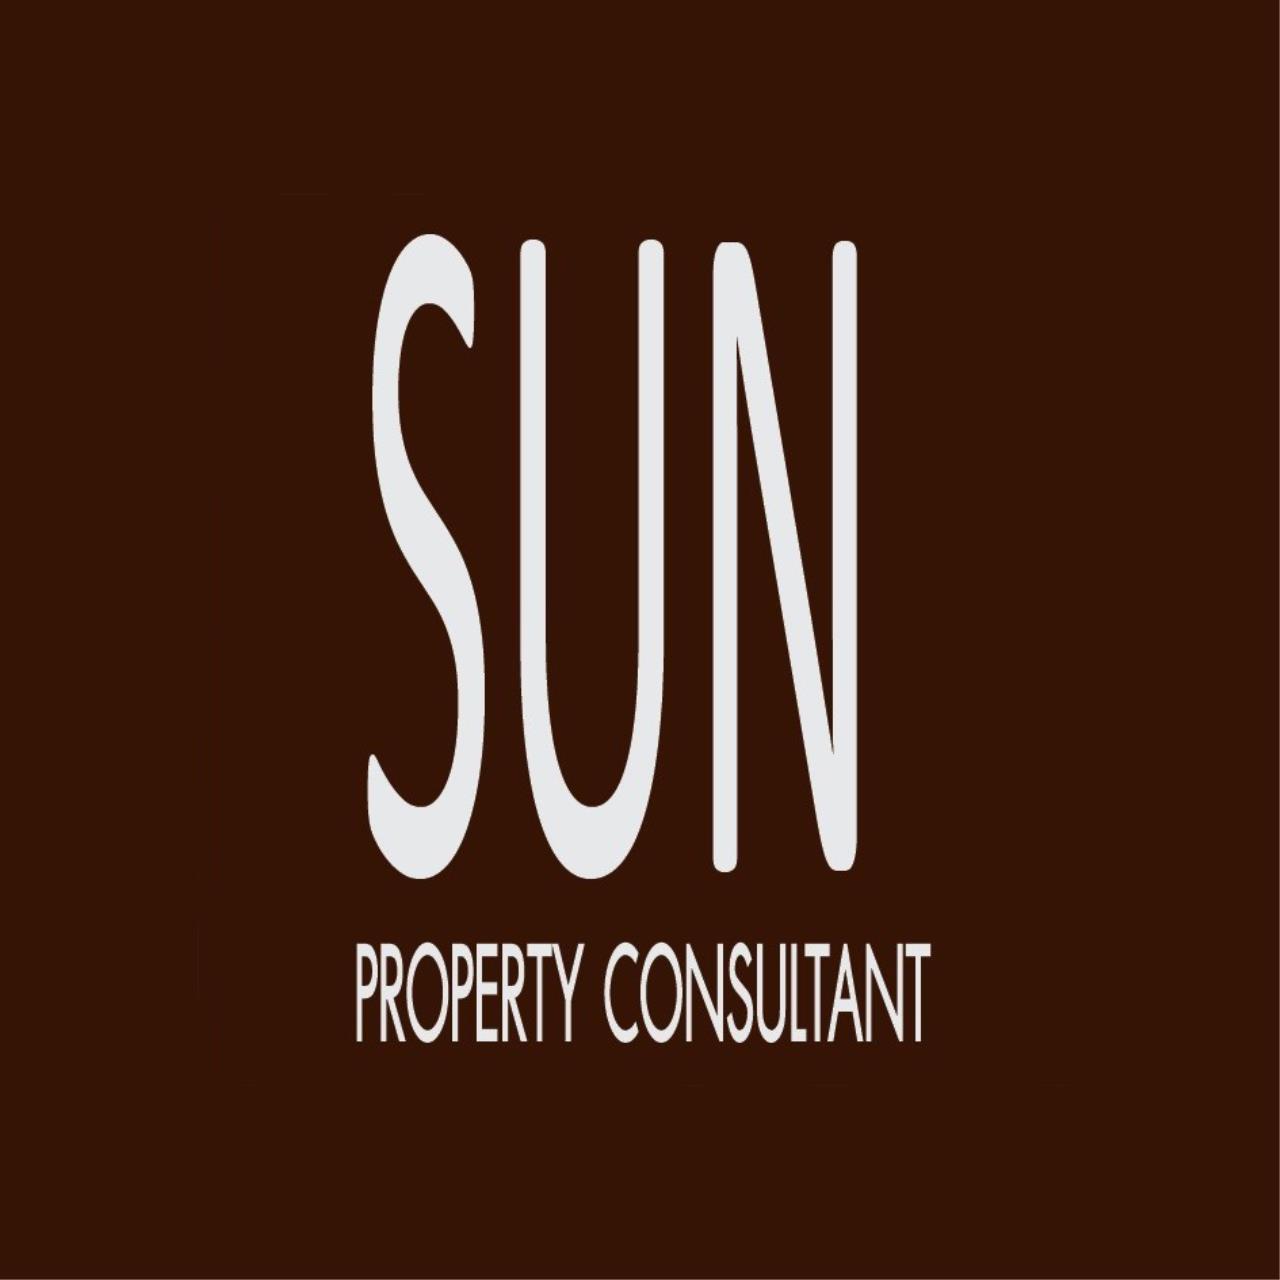 Sun Property Consultant Co., Ltd